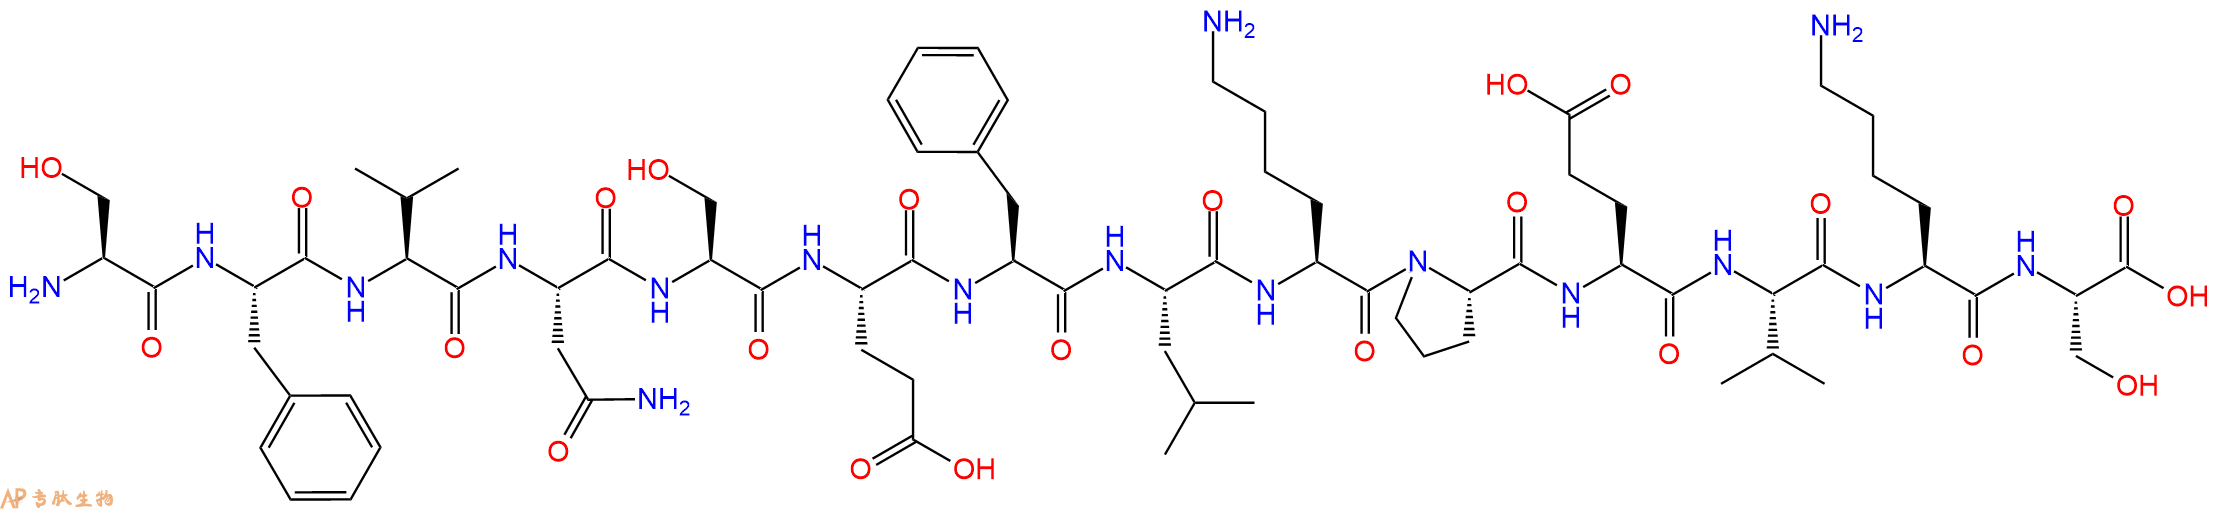 专肽生物产品蛋白激酶C片段 Protein Kinase C (660-673)